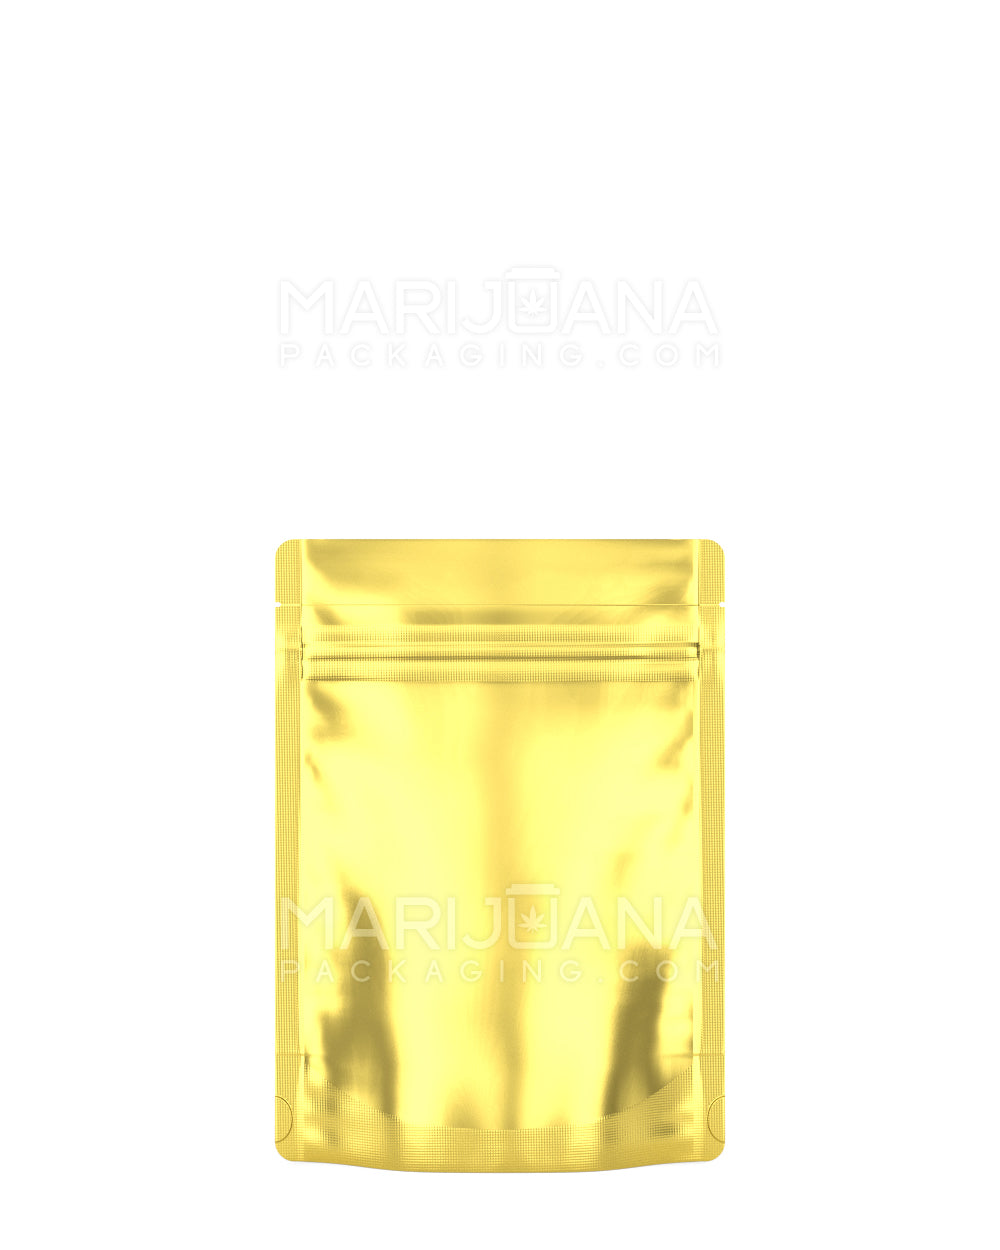 Tamper Evident | Matte Gold Vista Mylar Bag | 3.6in x 5in - 3.5g - 1000 Count - 3